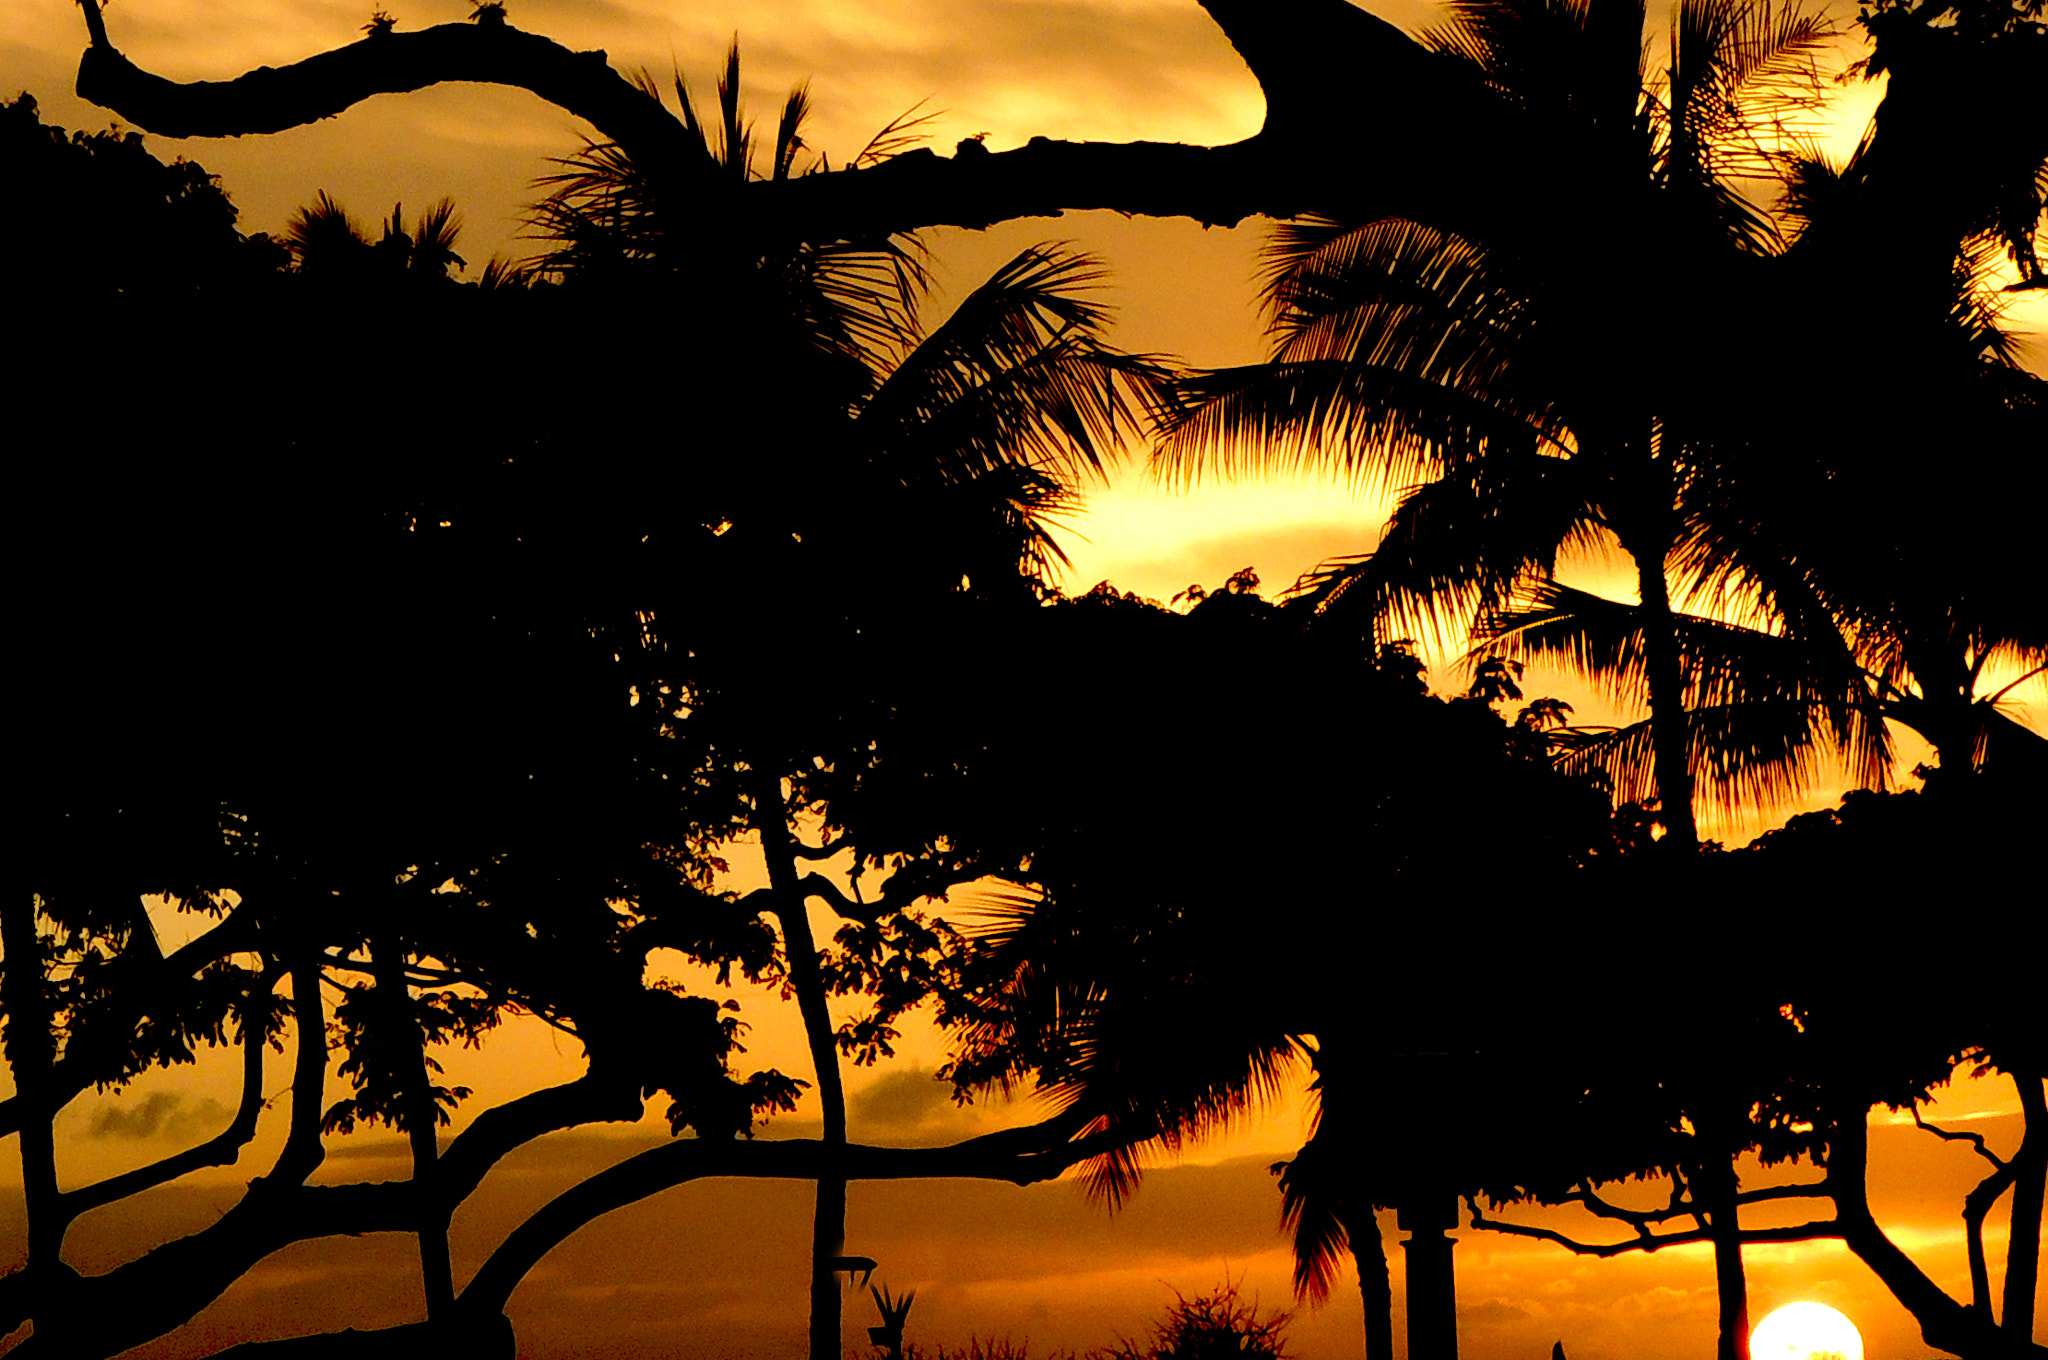 Nikon Coolpix P310 sample photo. Sunset beach hi photography